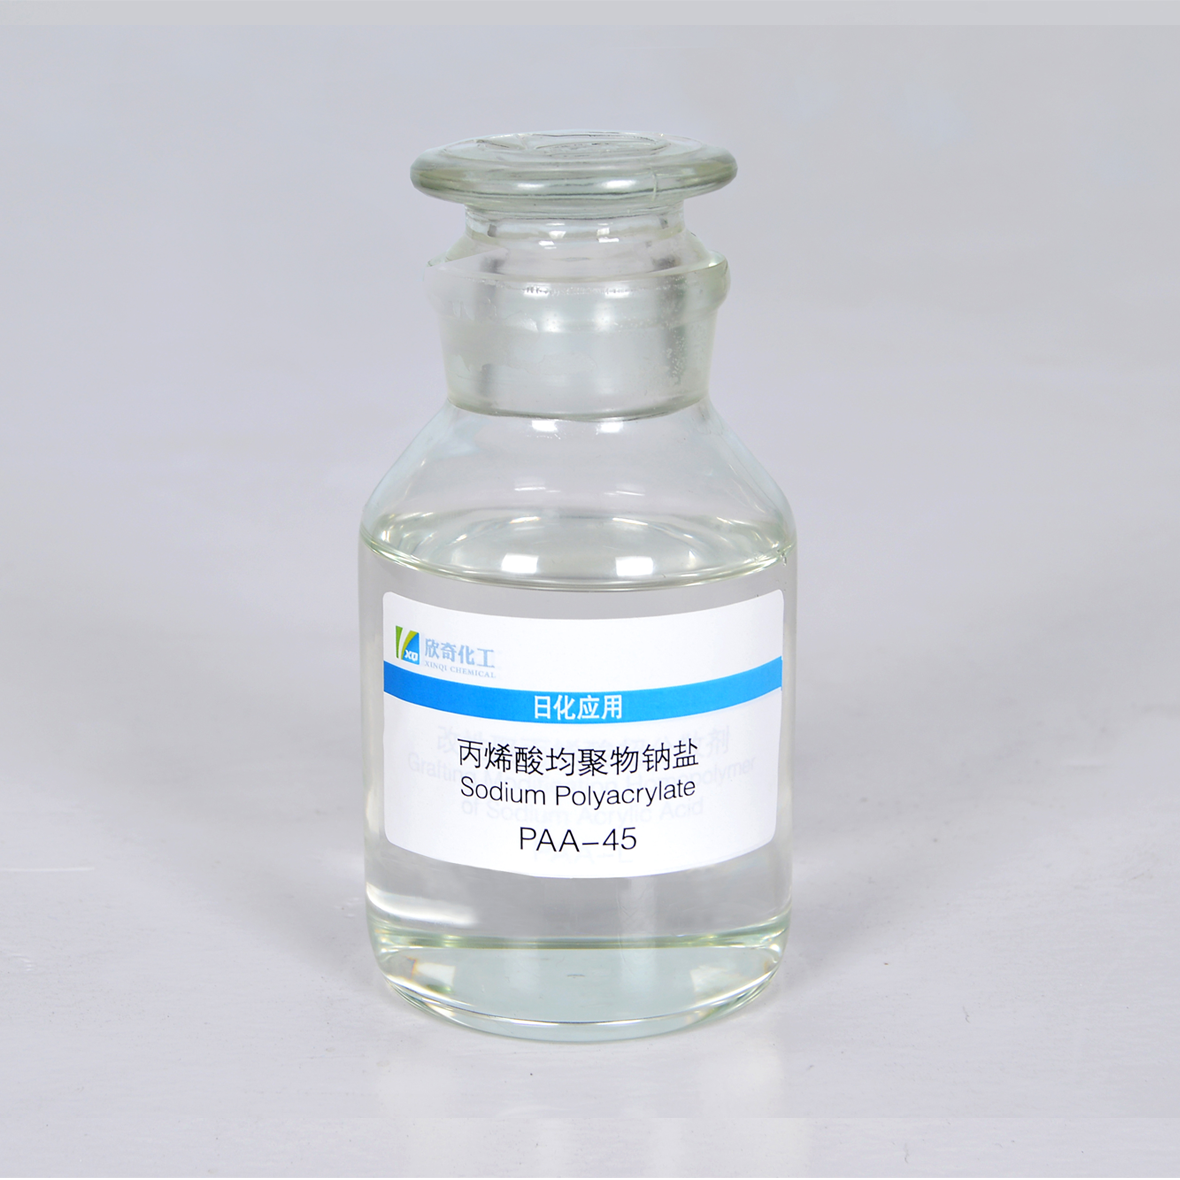 丙烯酸均聚物钠盐 PAA-45